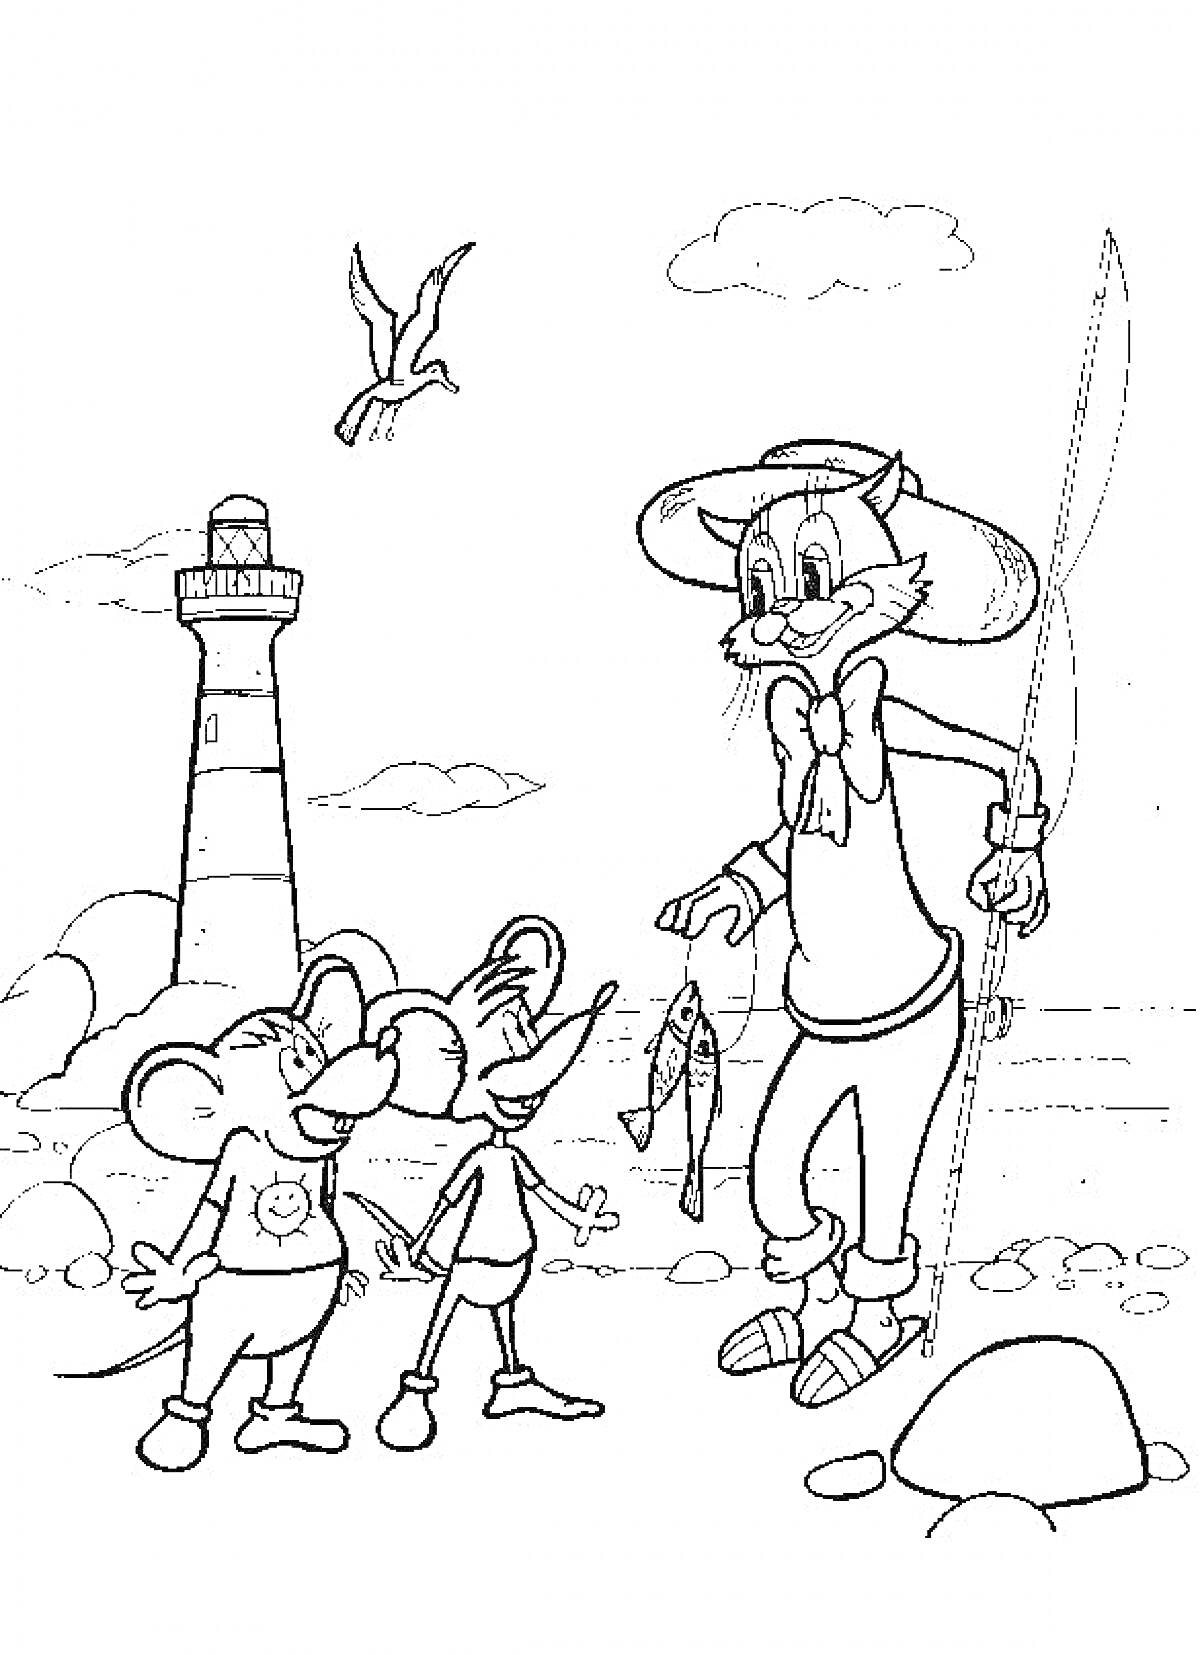 РаскраскаКот Леопольд с мышатами на рыбалке возле маяка